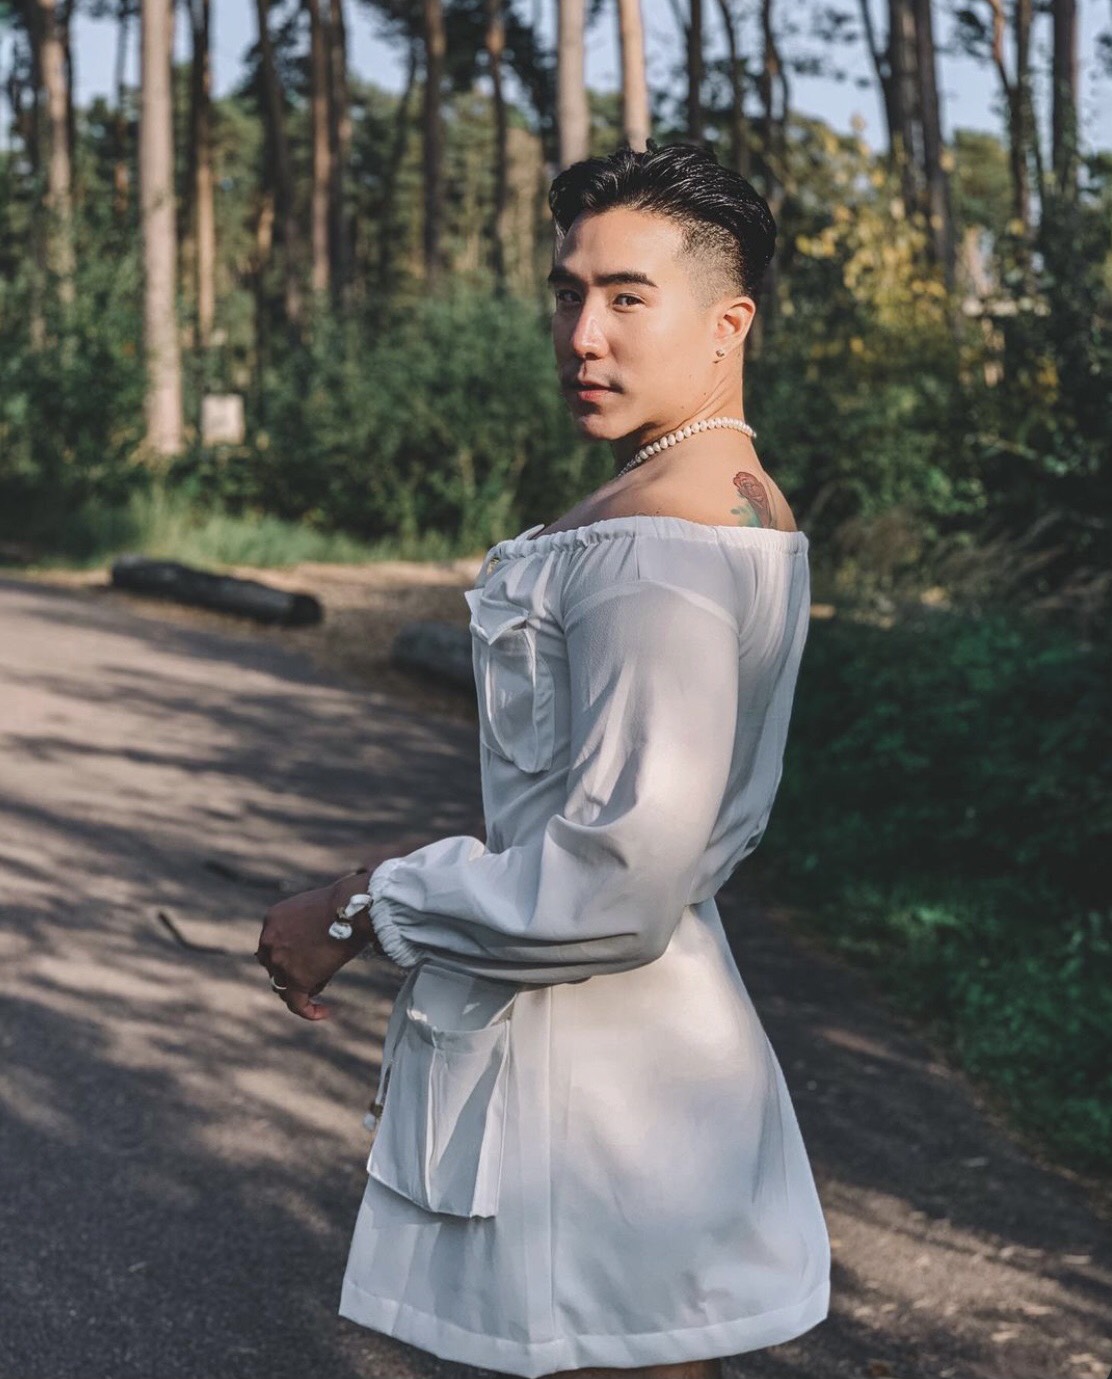 Fashionista người Thái thu hút giới trẻ nhờ diện trang phục của phụ nữ - Ảnh 11